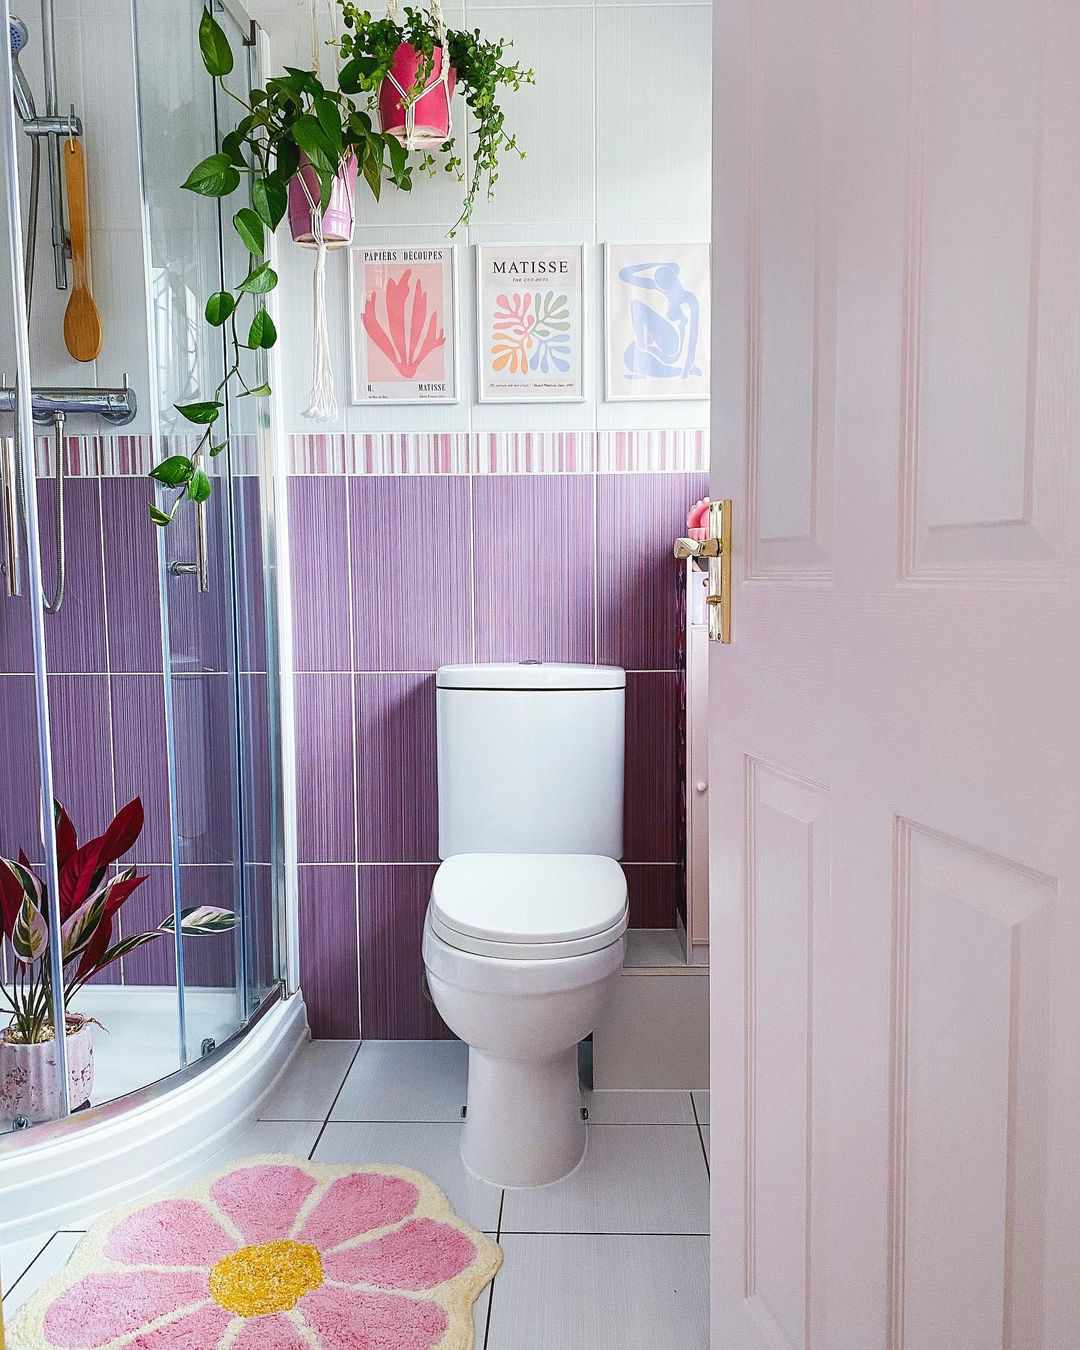 Banheiro em tons pastéis com azulejos roxos na parede.